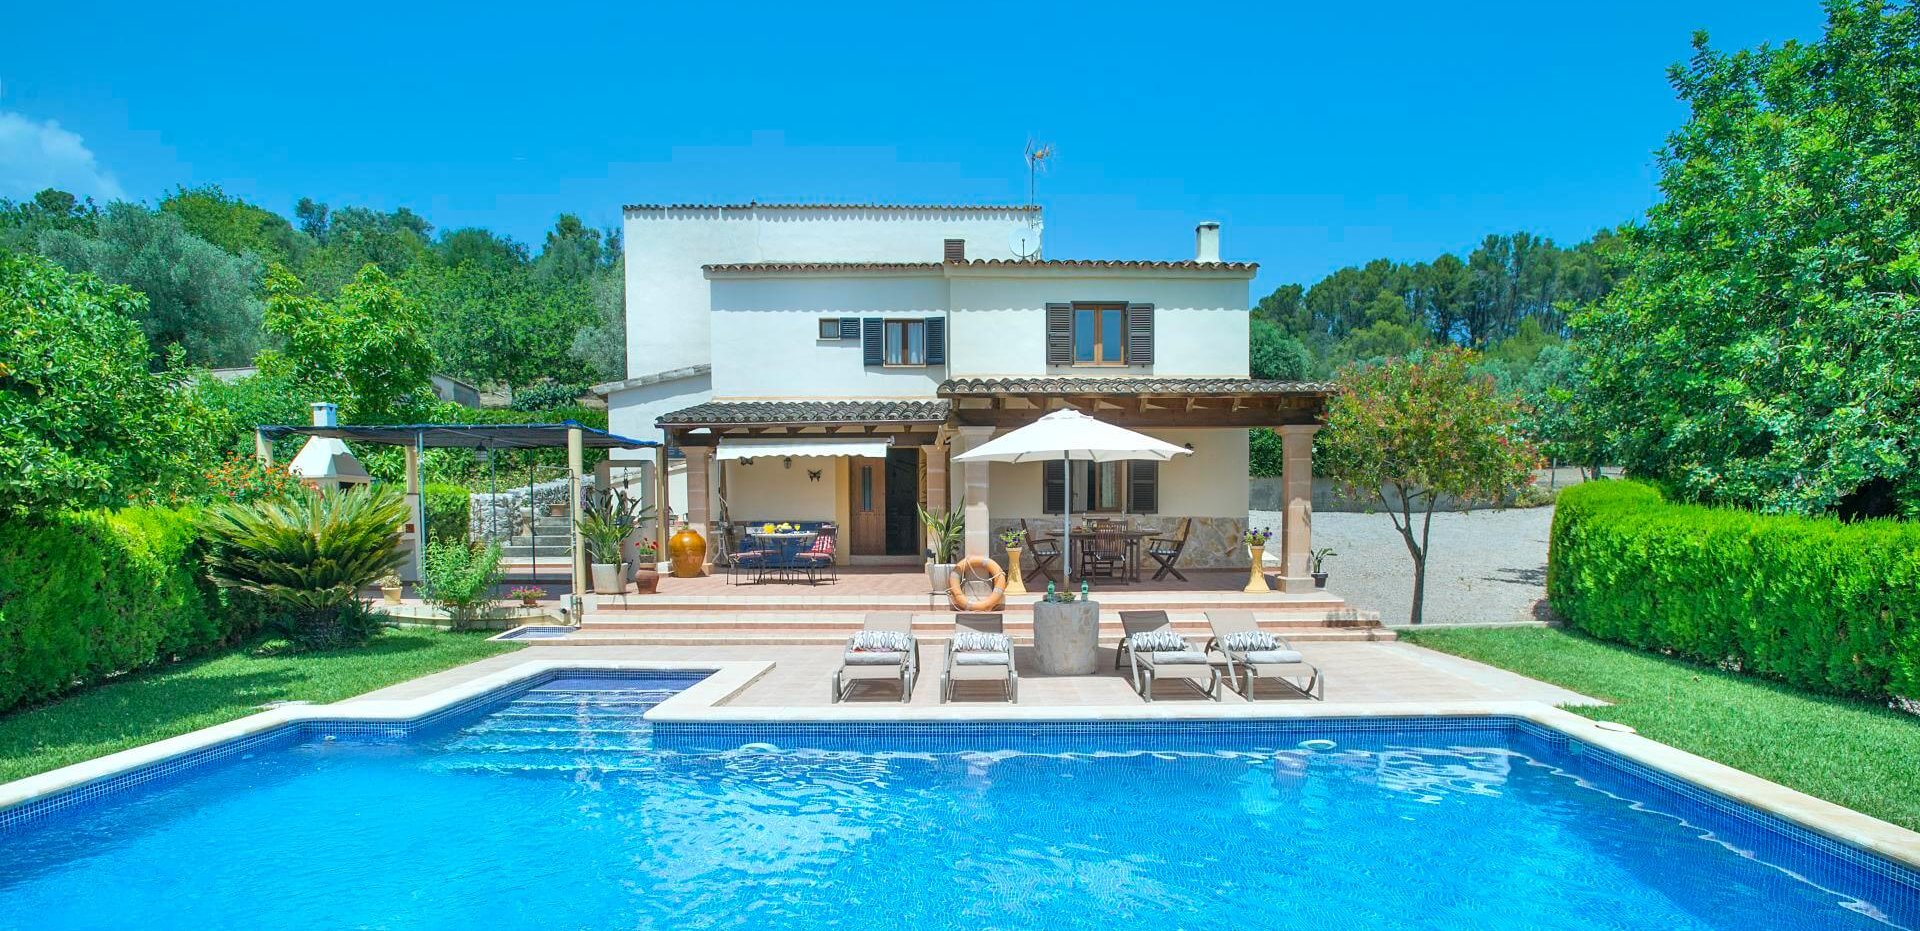 Ferienhaus Mallorca mit Pool für 4 Personen auf schönem Grundstück